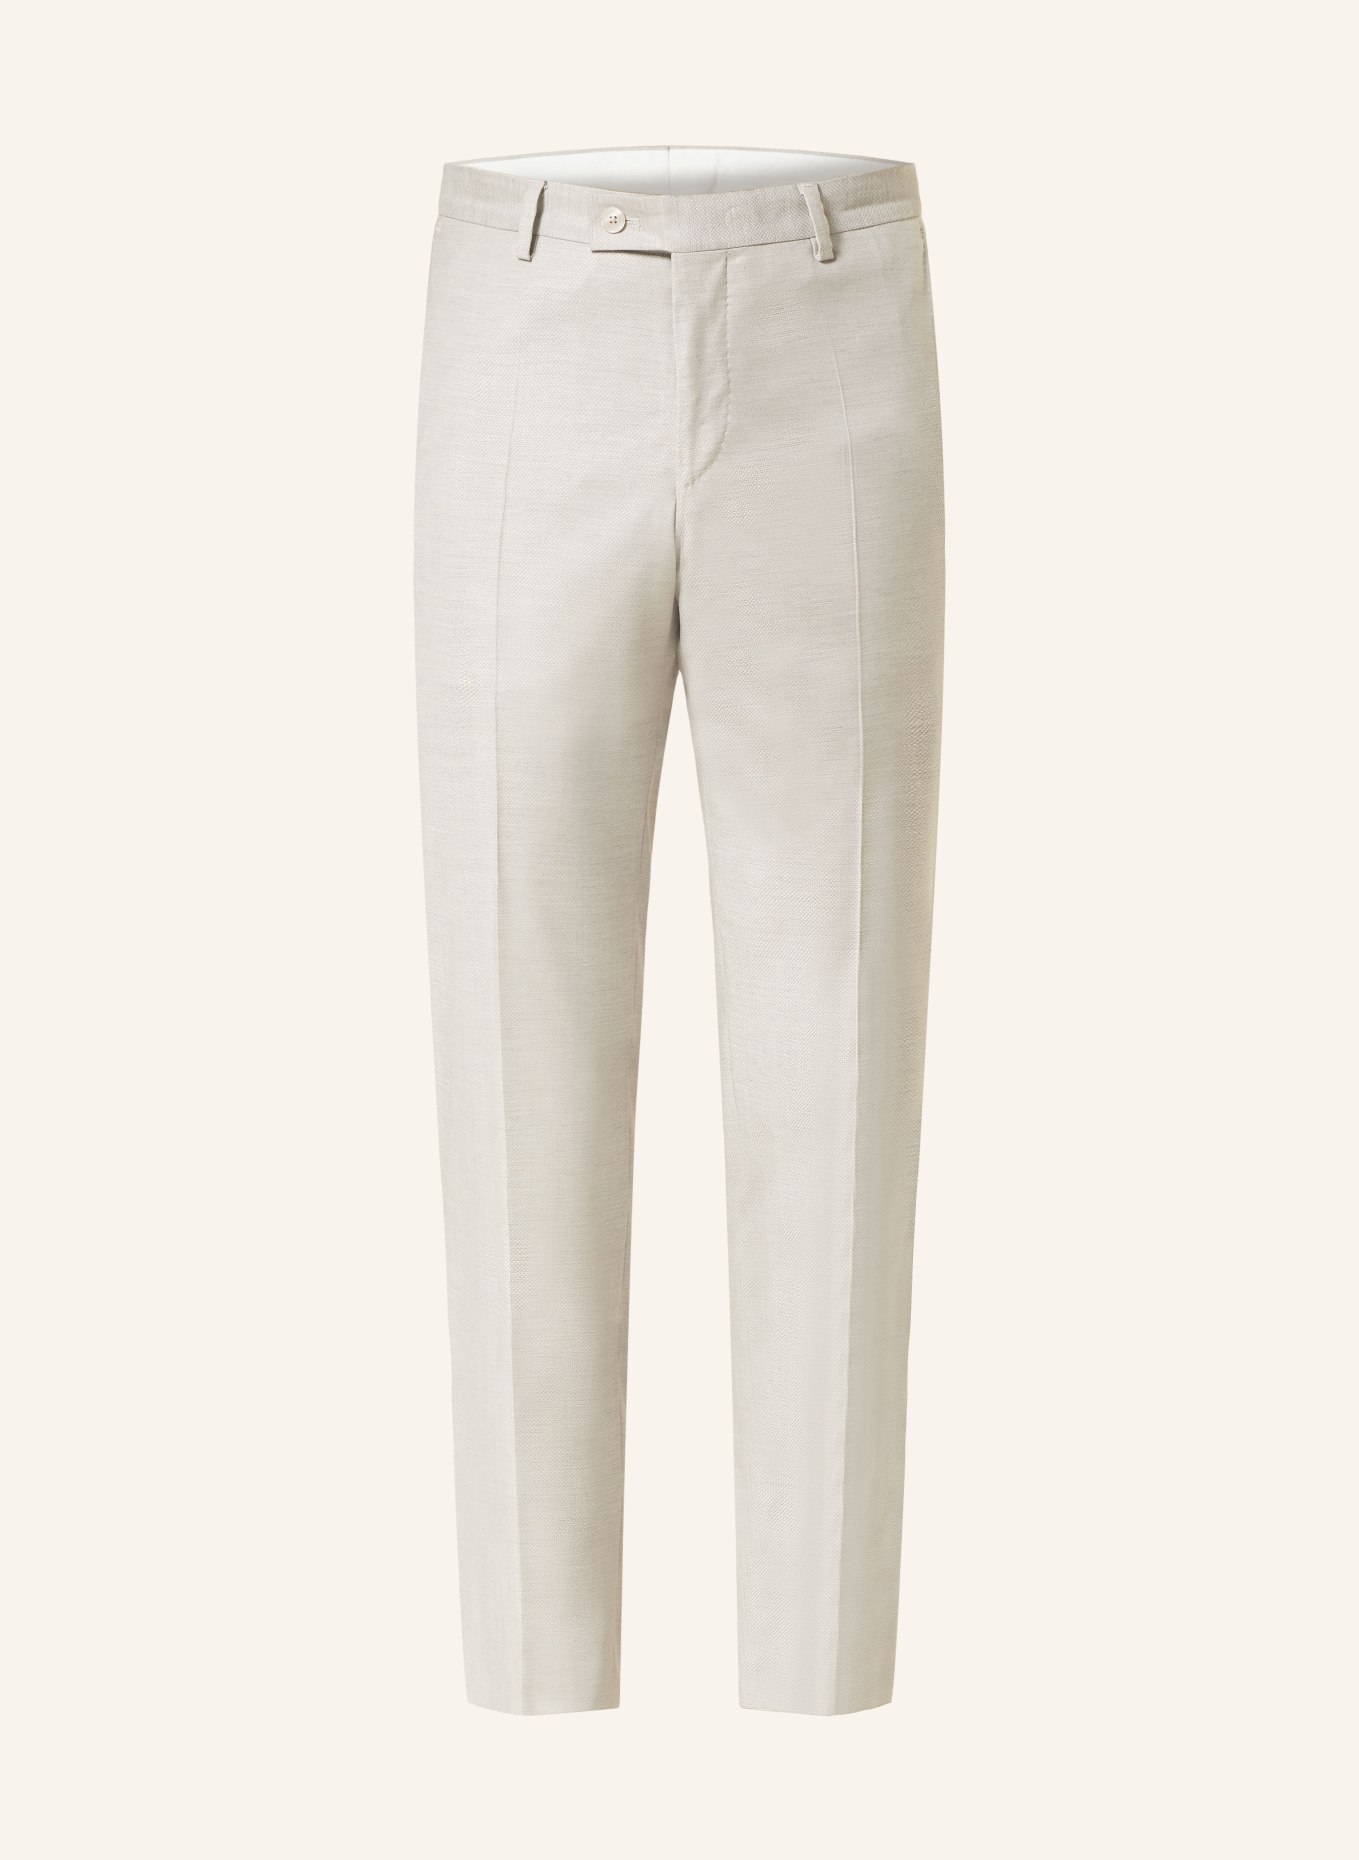 BALDESSARINI Suit trousers slim fit, Color: 8920 Irish Cream Pattern (Image 1)